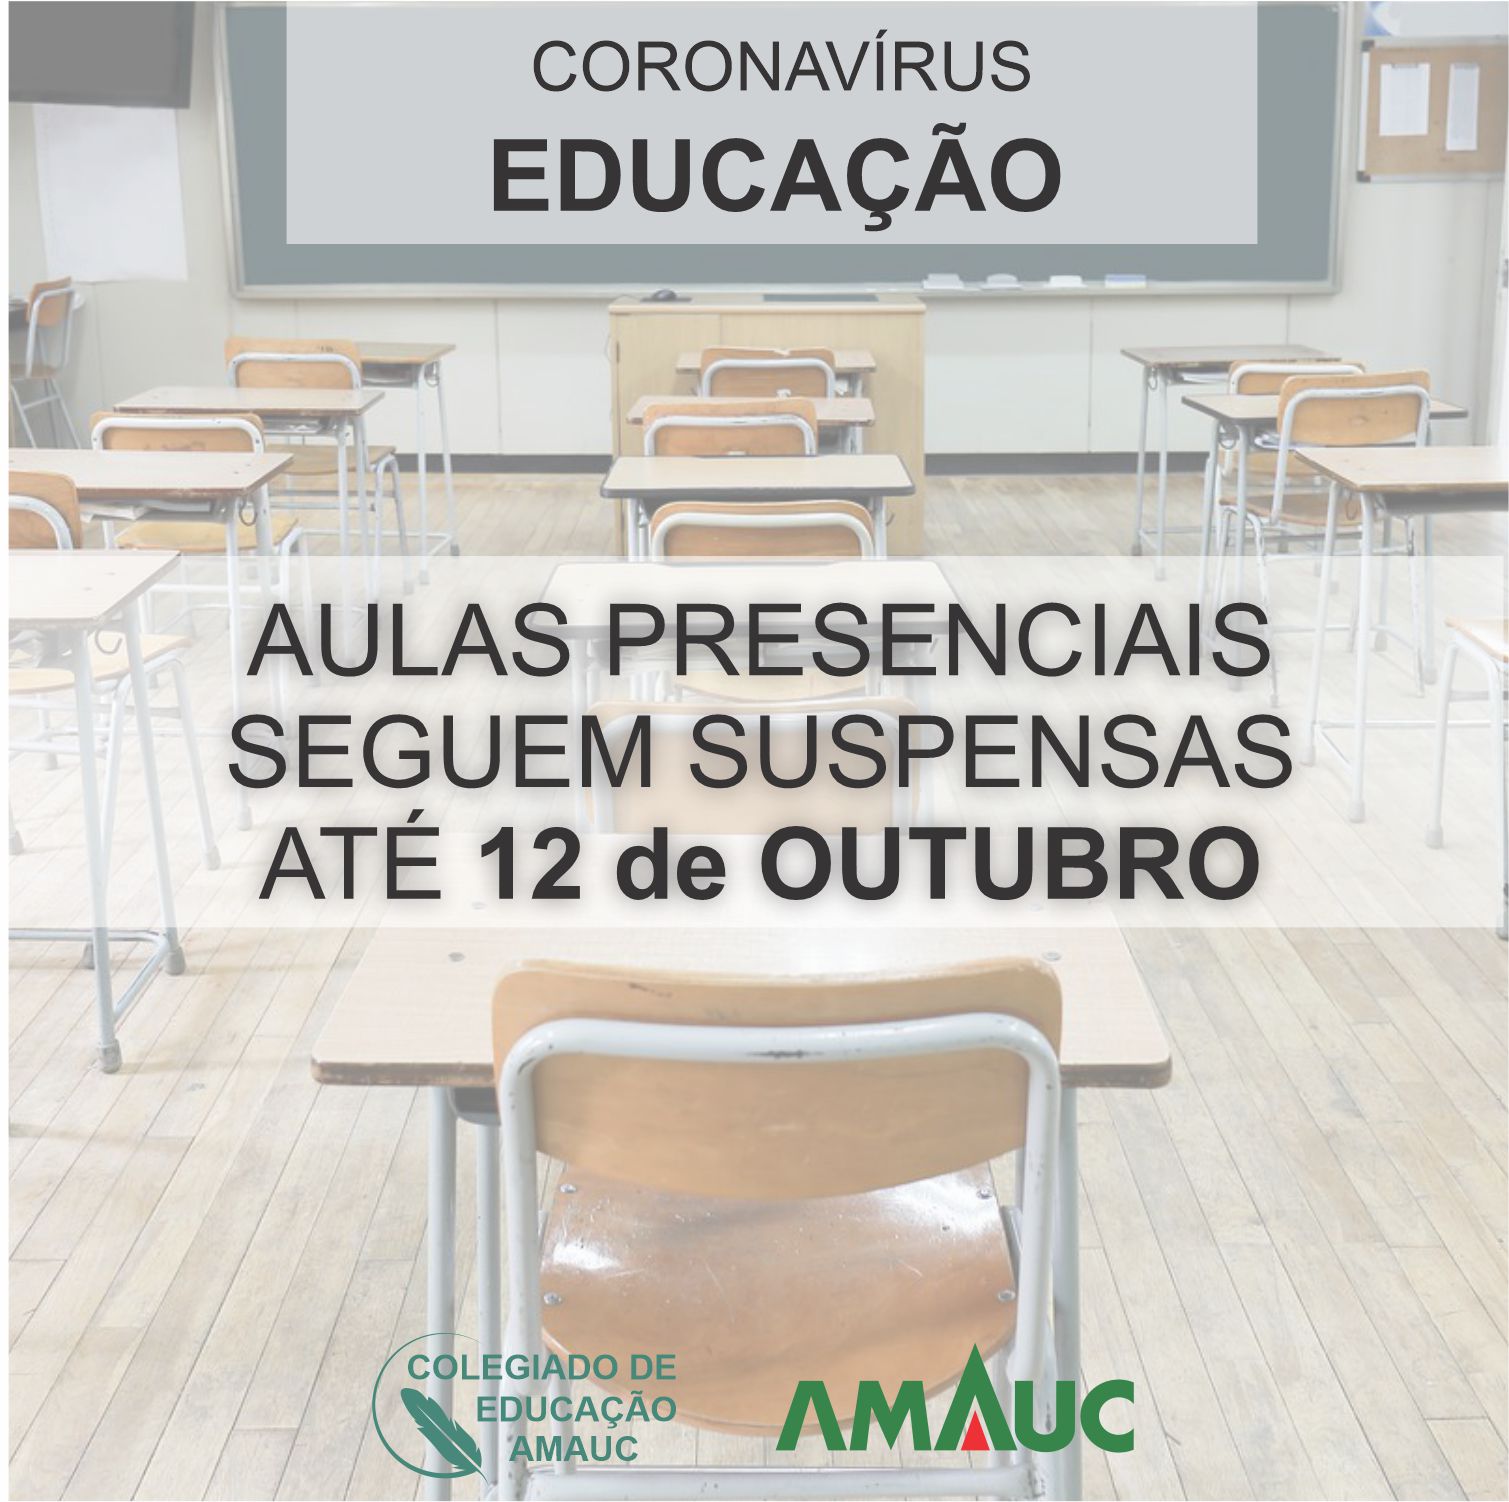 You are currently viewing Educação estabelece suspensão de aulas presenciais até 12 de outubro em Santa Catarina e a retomada vai depender do andamento da pandemia.